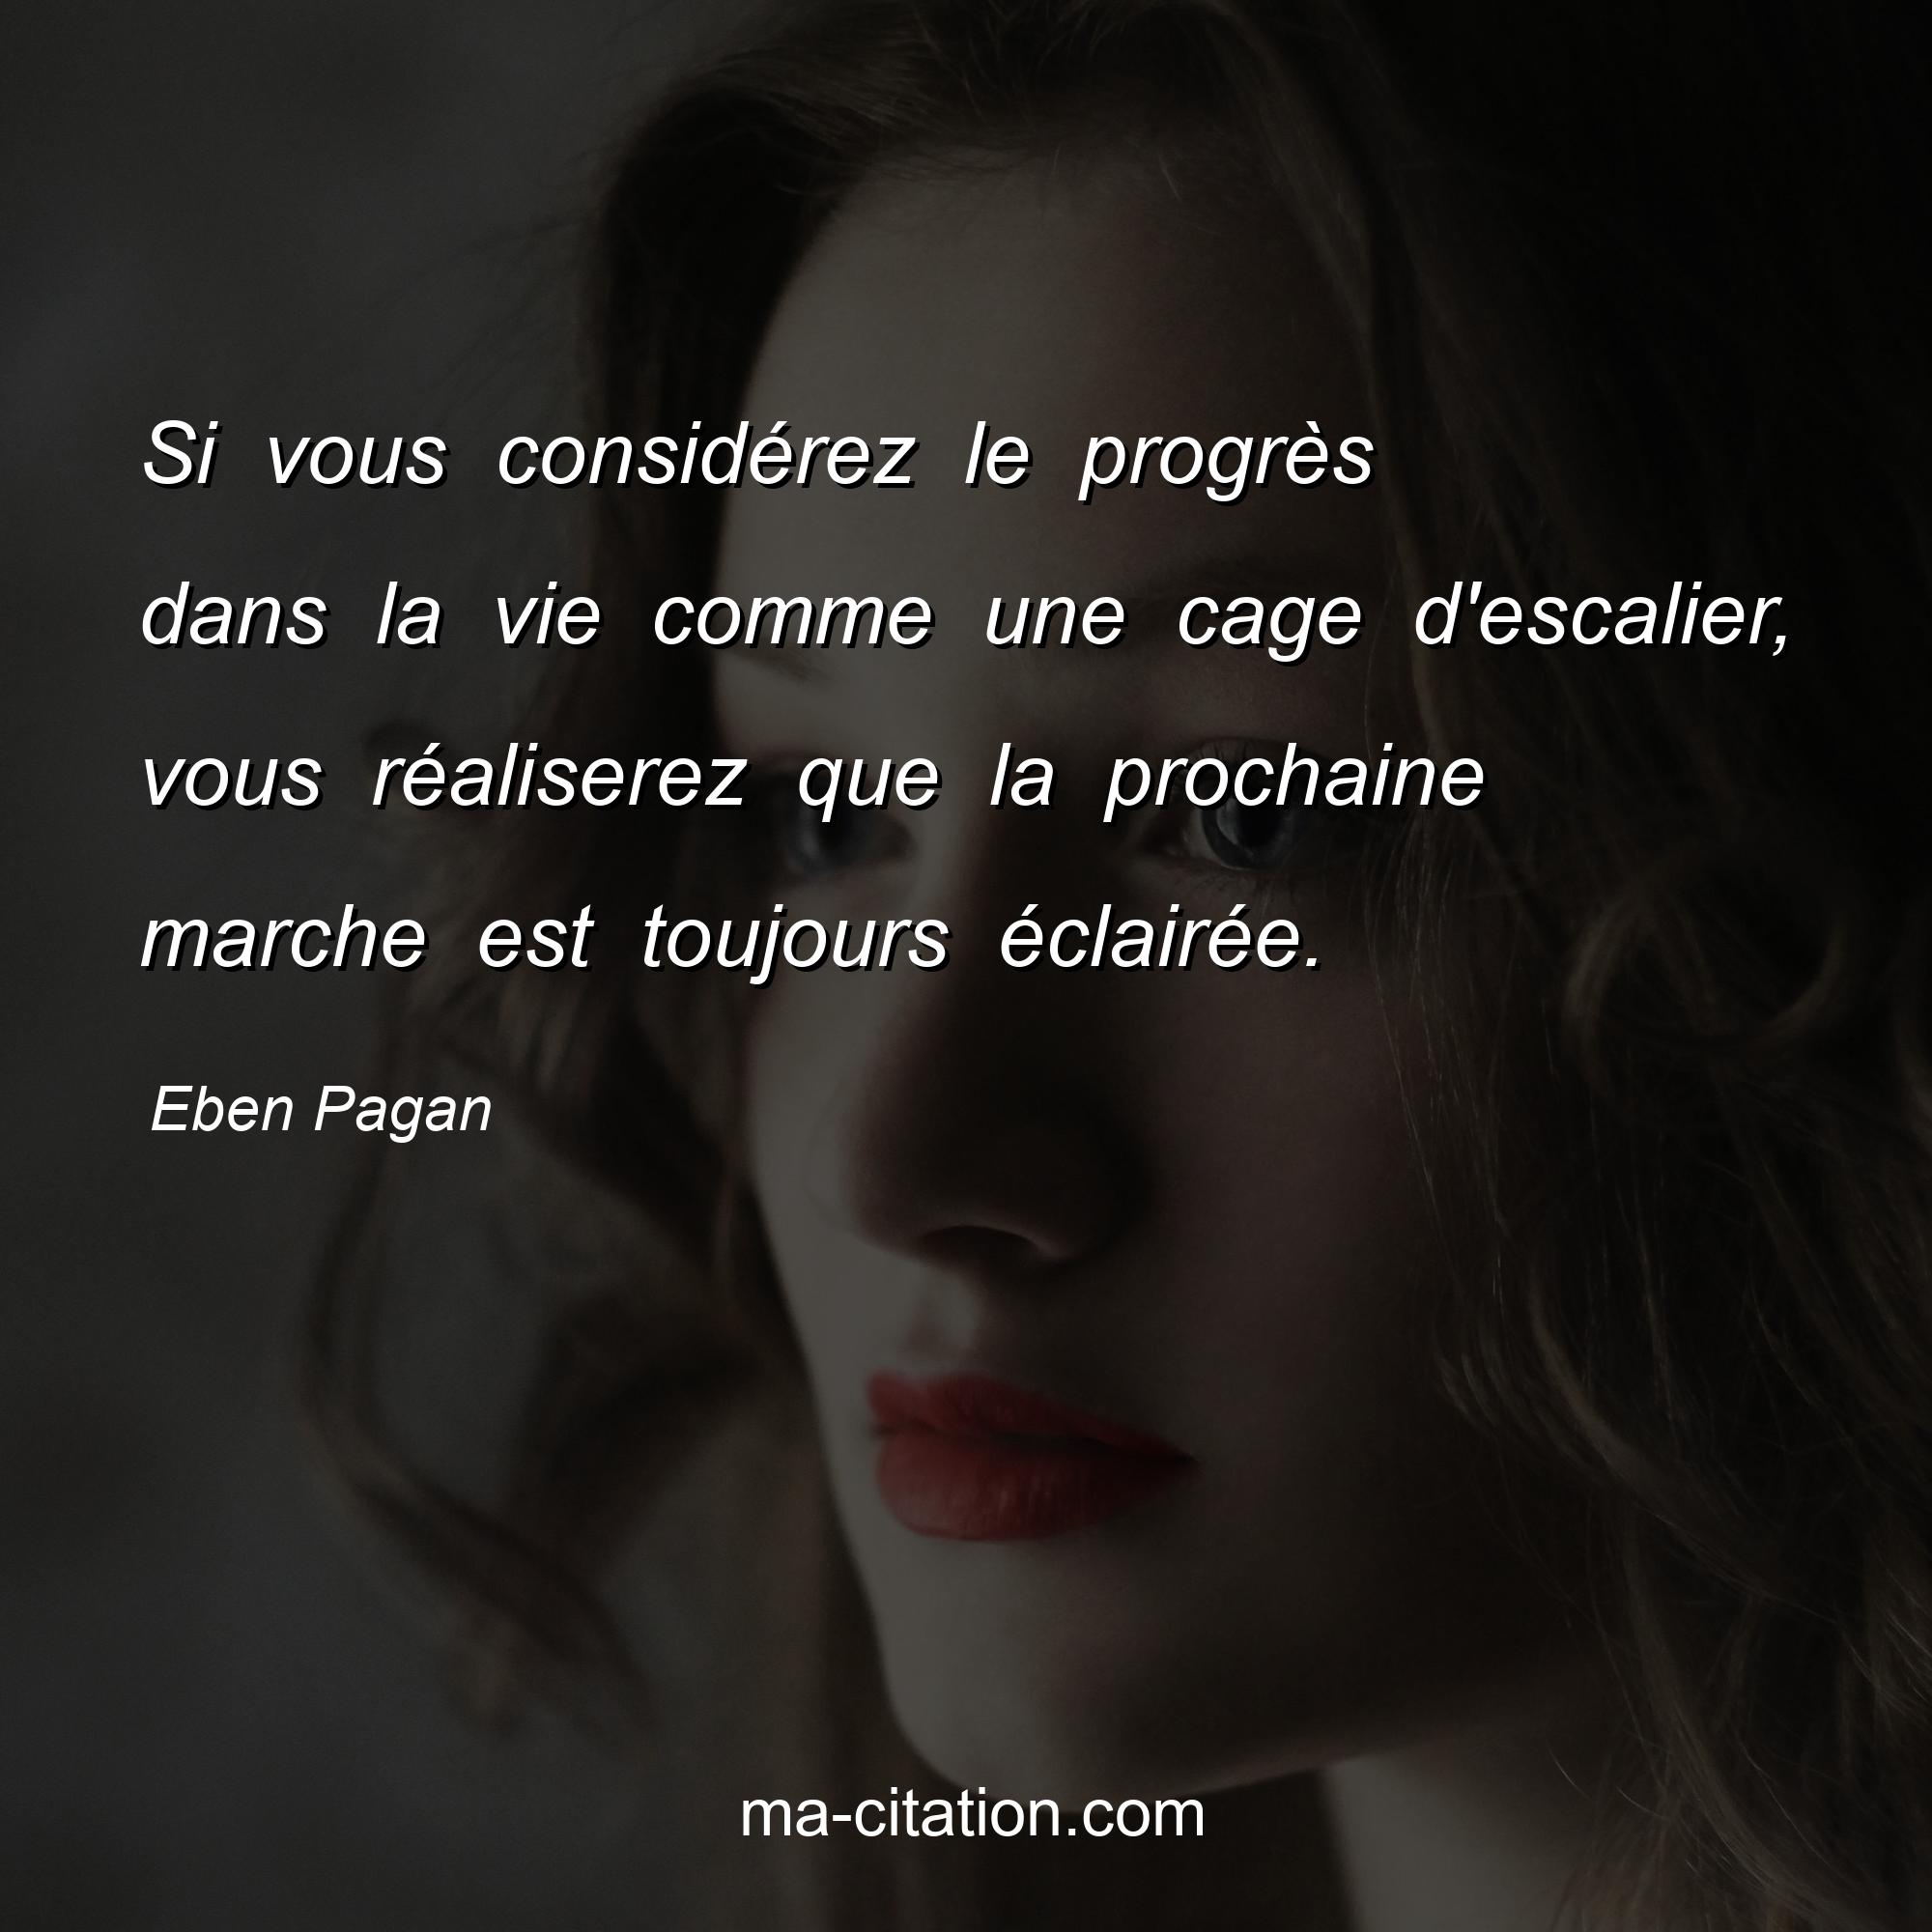 Eben Pagan : Si vous considérez le progrès dans la vie comme une cage d'escalier, vous réaliserez que la prochaine marche est toujours éclairée.